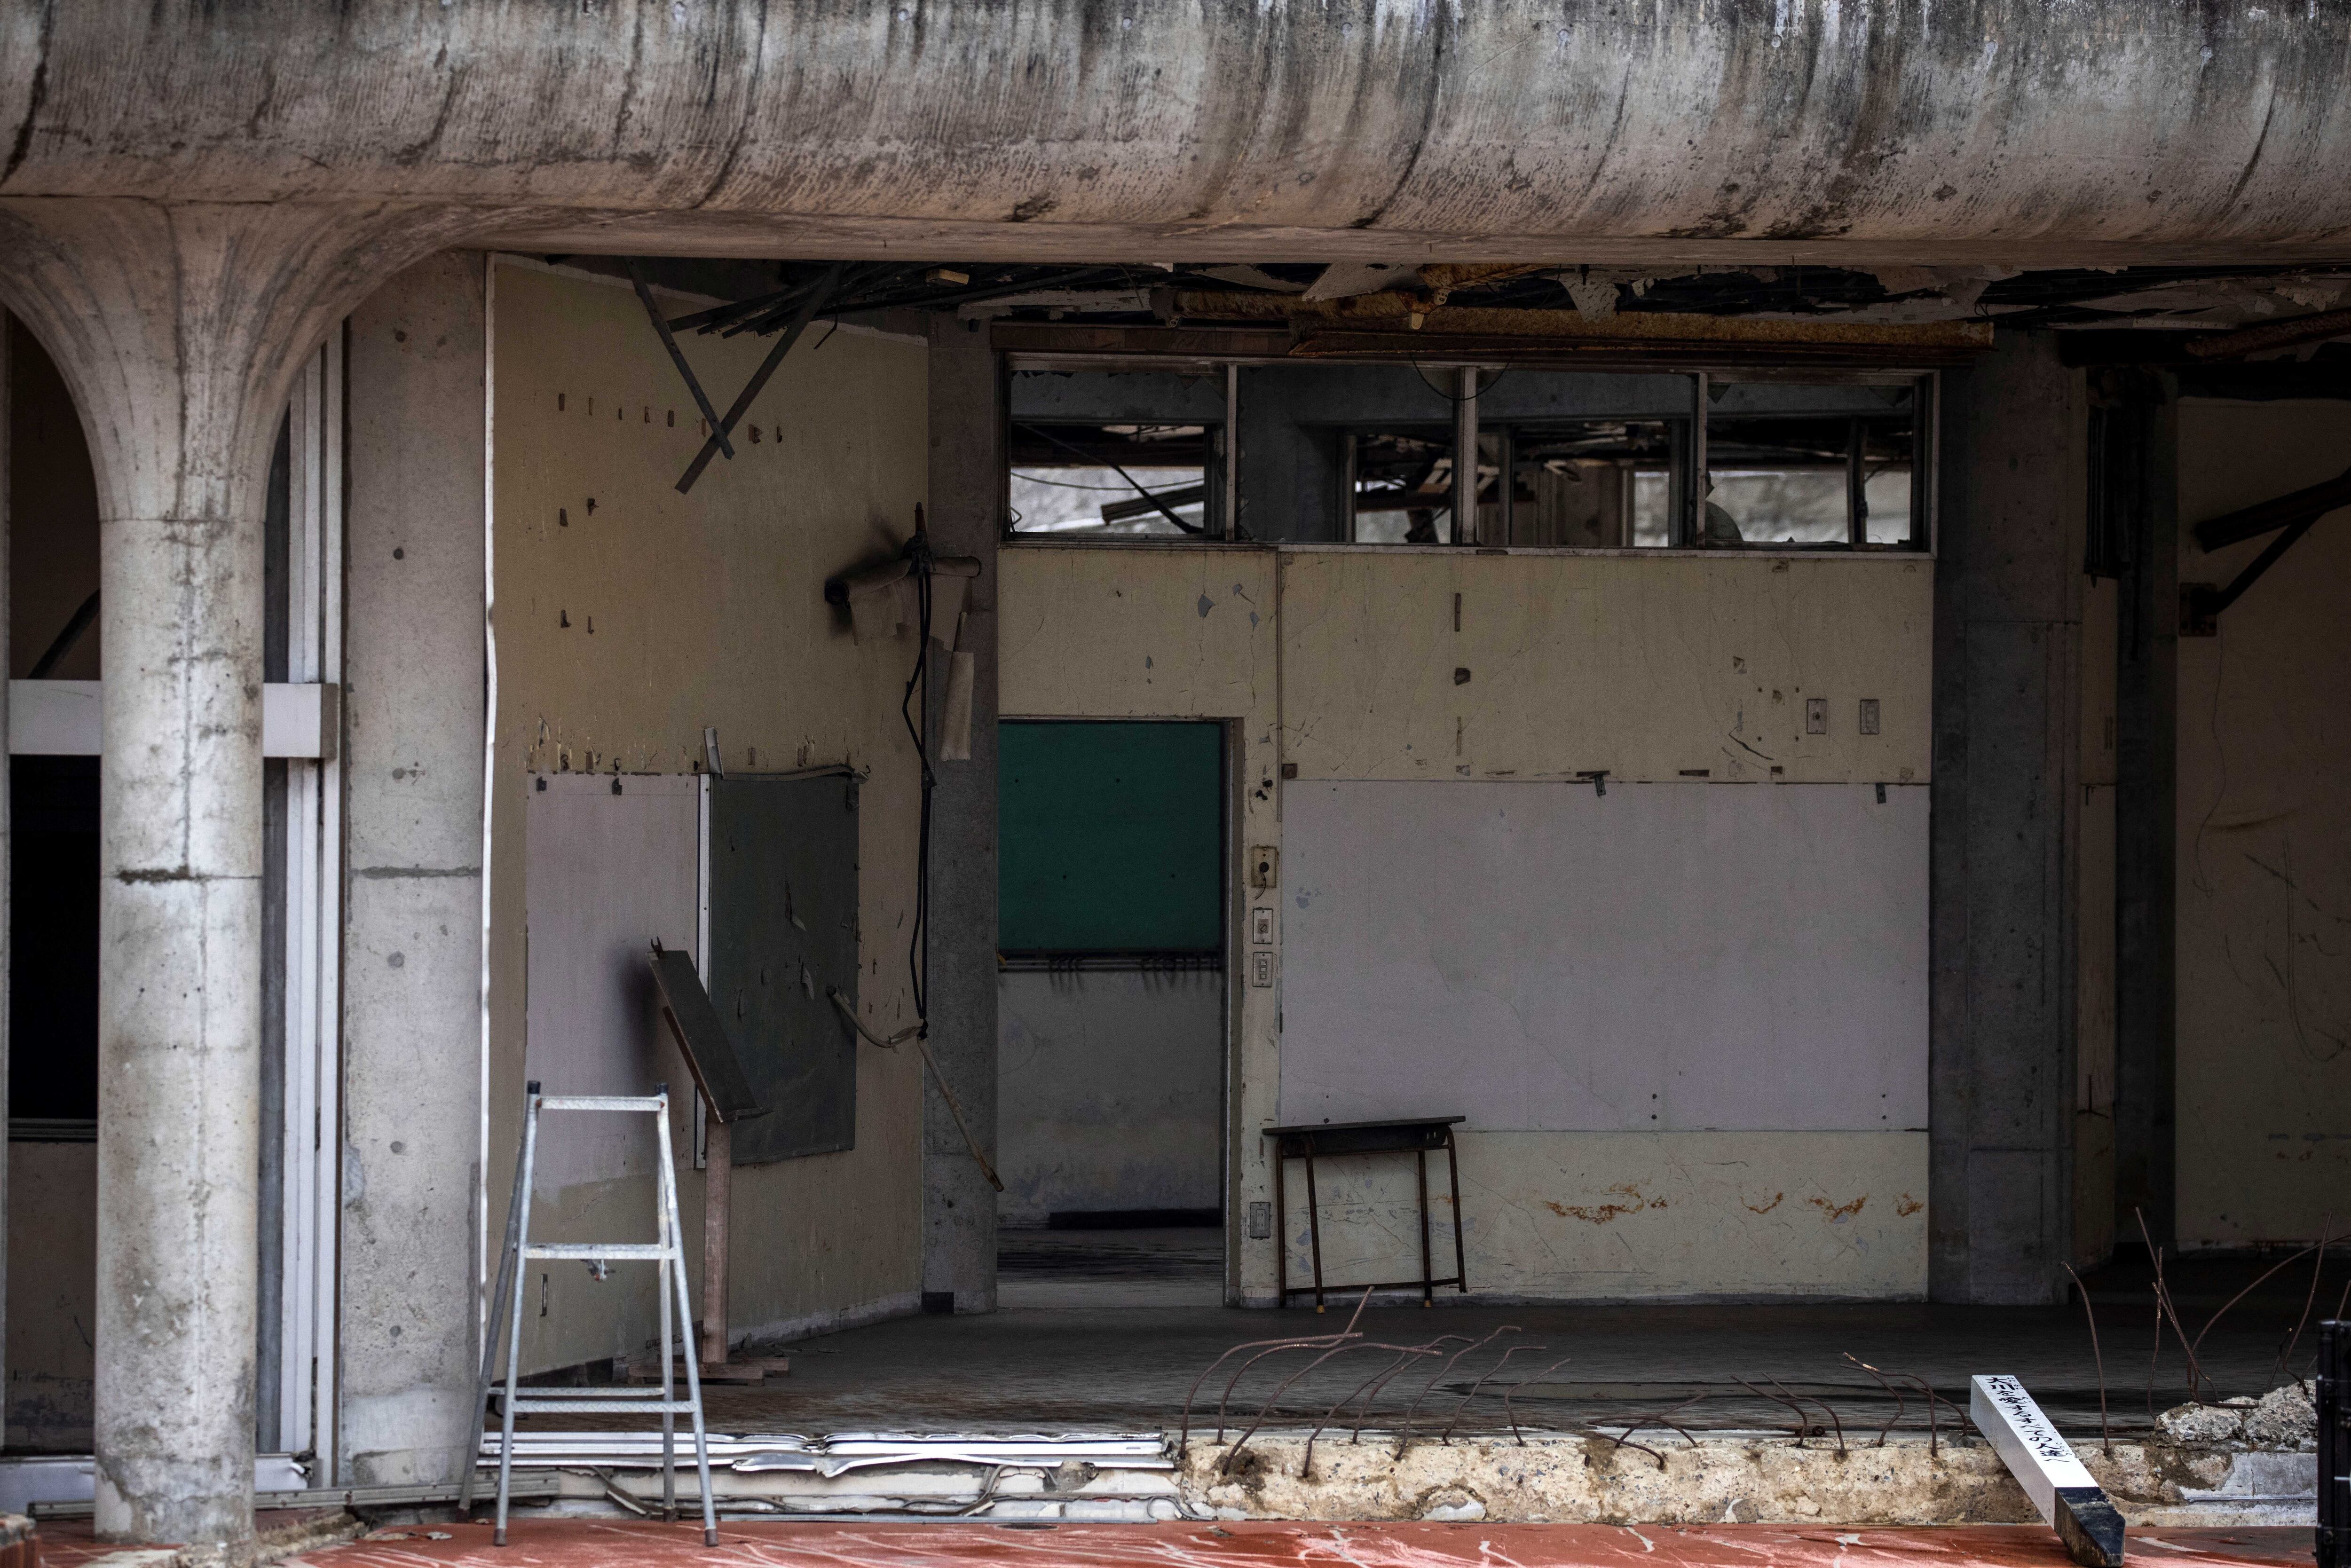 La escuela quedó devastada. Los daños nunca fueron reparados y nunca se volvió a utilizar (Behrouz MEHRI / AFP)